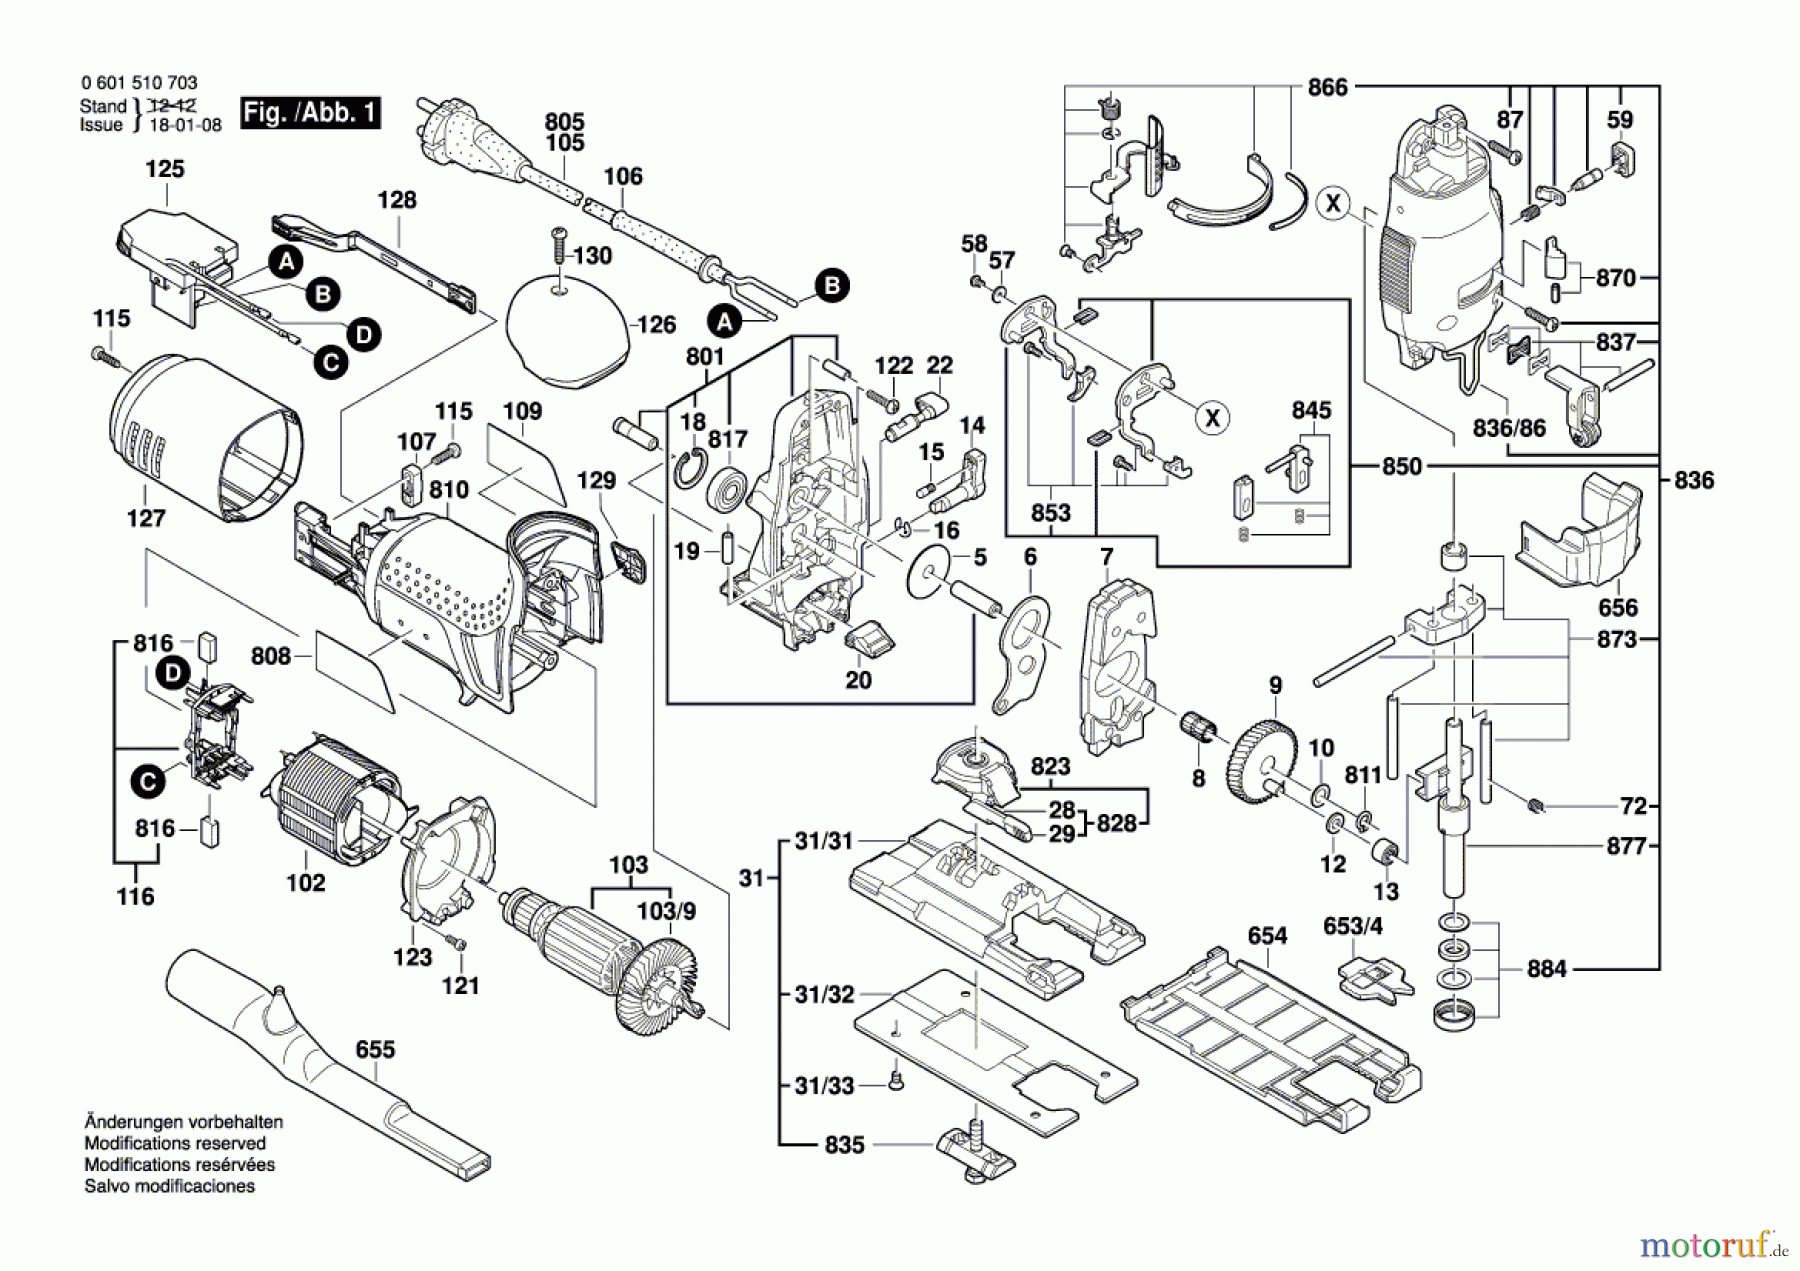  Bosch Werkzeug Pendelstichsäge BTI-ST 135 E Seite 1